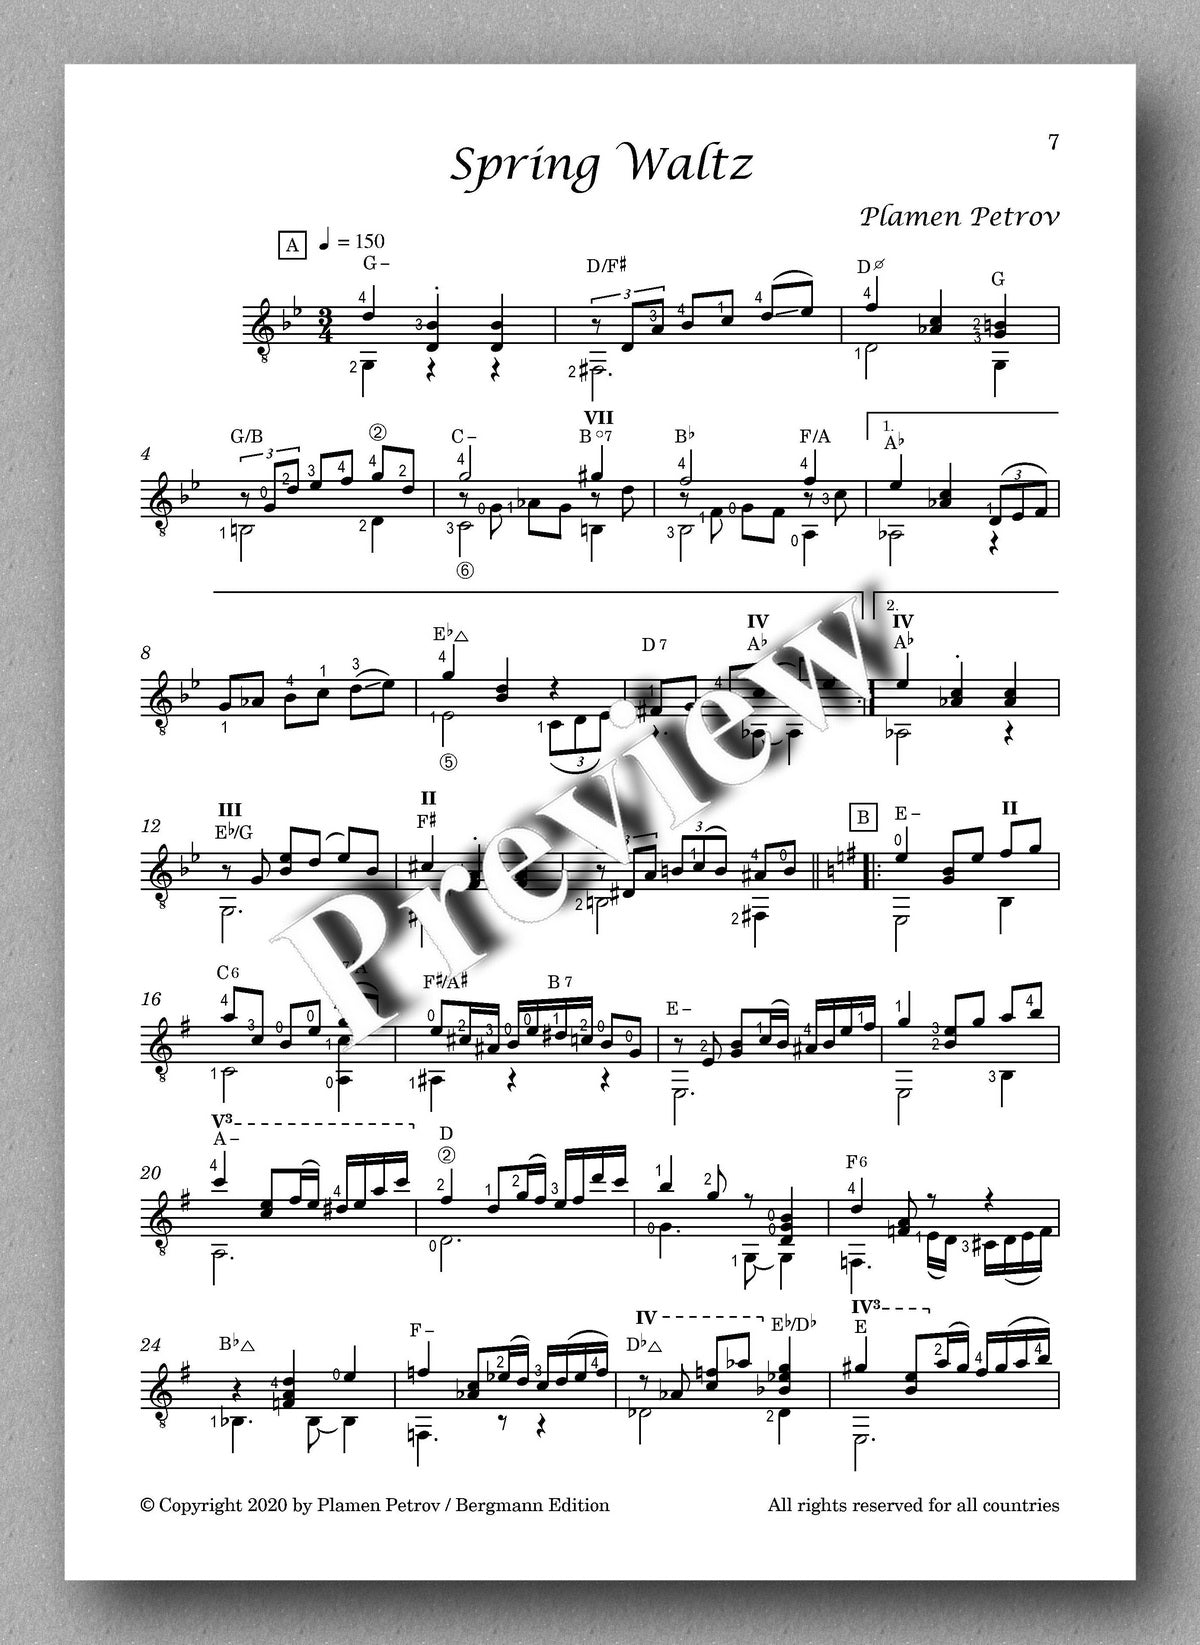 Moonlight Flowers by Plamen Petrov - music score 2